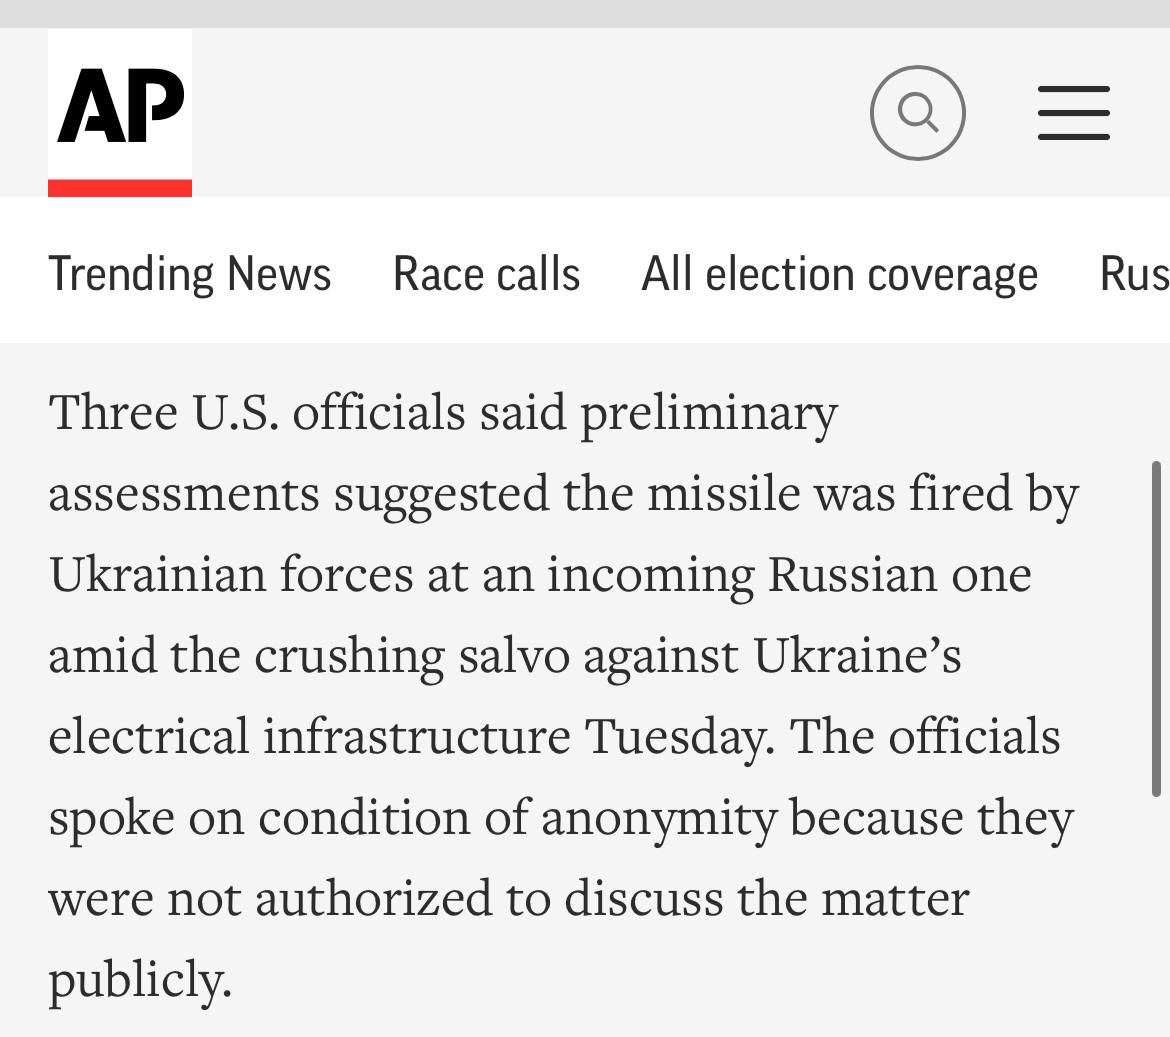 AP: Ракета, упавшая на территорию Польши, могла быть выпущена украинскими силами ПВО, которые пытались сбить российскую ракету